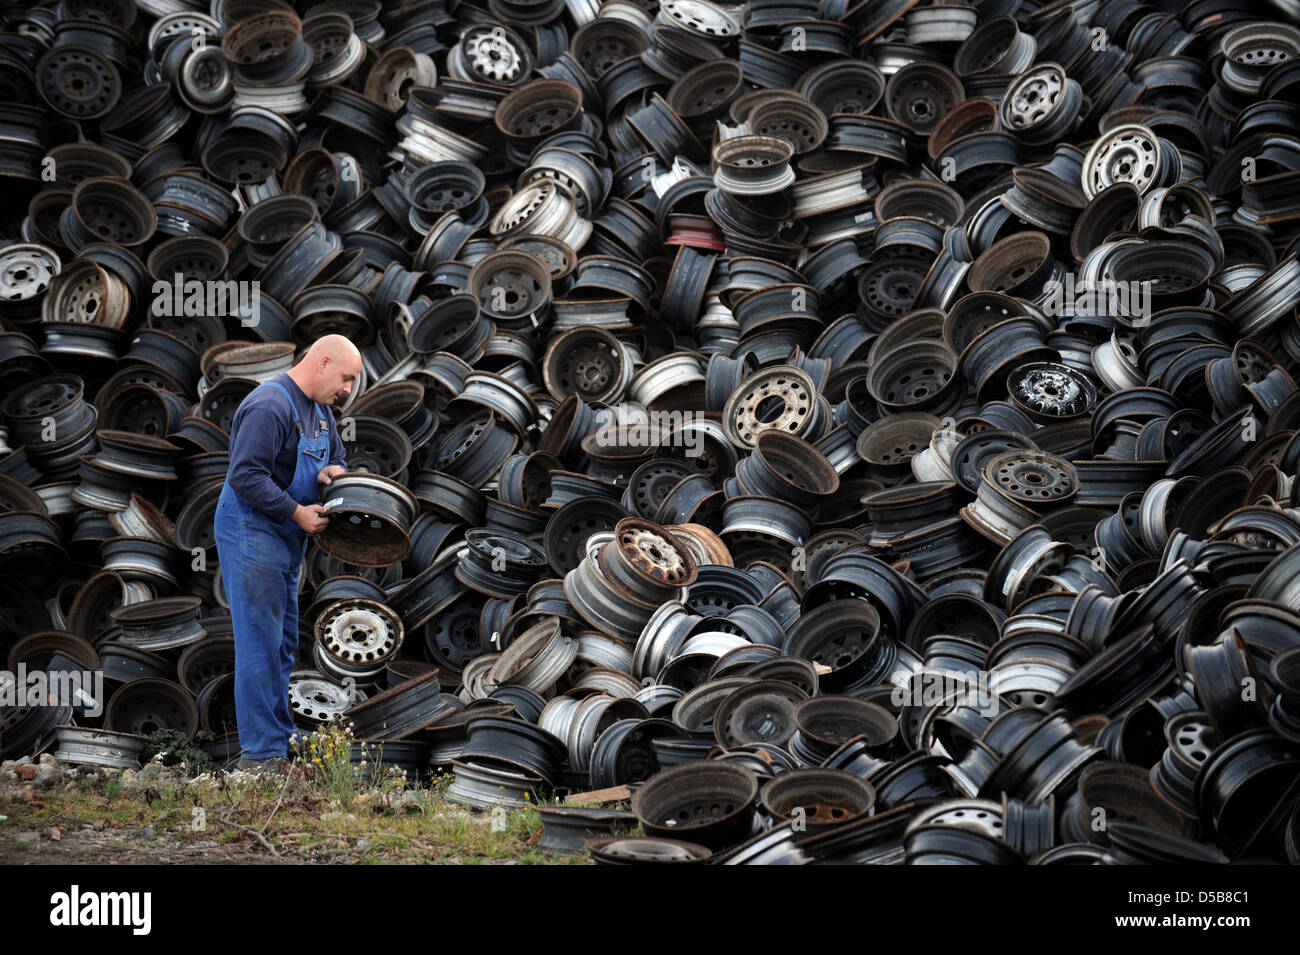 Krostitz, Germany, old steel wheels in a junkyard Stock Photo